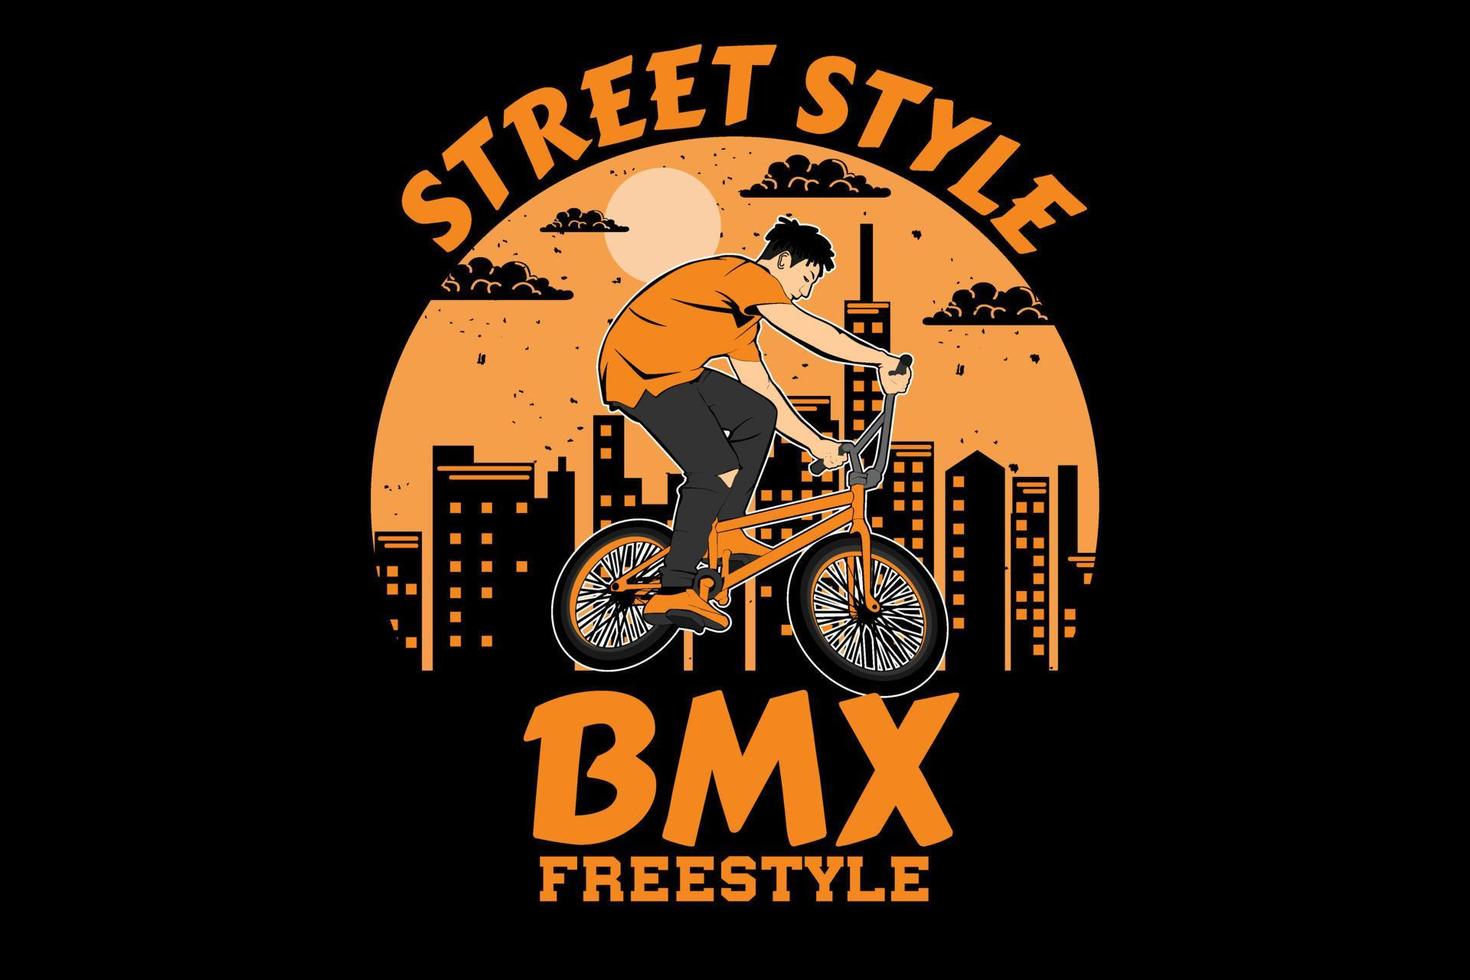 street style bmx freestyle design vintage rétro vecteur